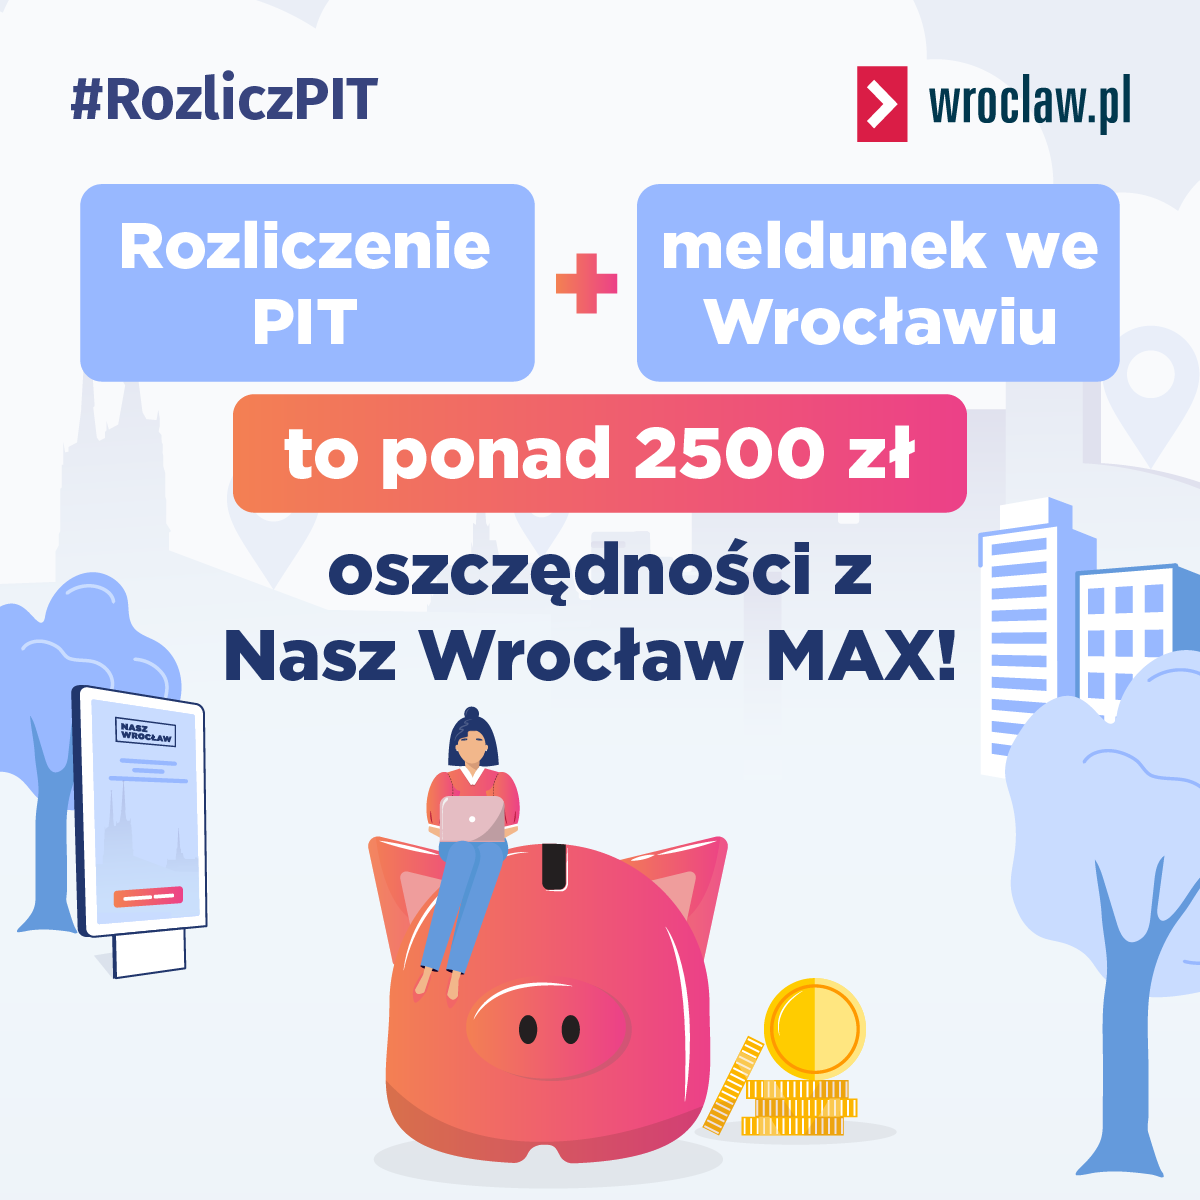 Powiększ obraz: Rozliczenie PIT plus meldunek we Wrocławiu to ponad 2500 zł oszczędności z Nasz Wrocław MAX